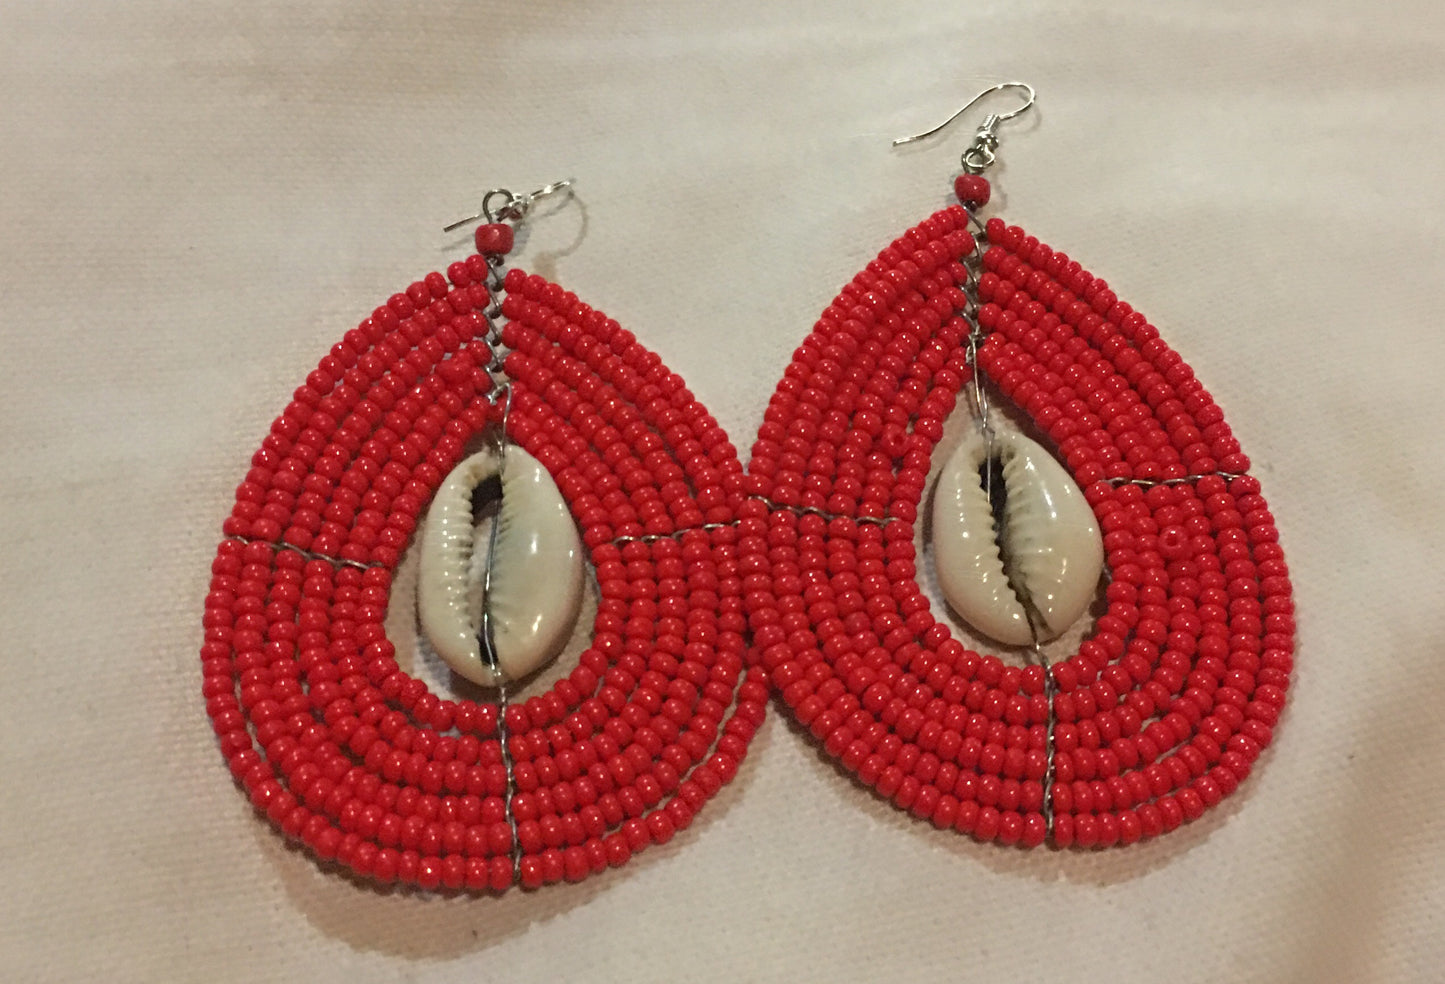 Beaded handmade earrings